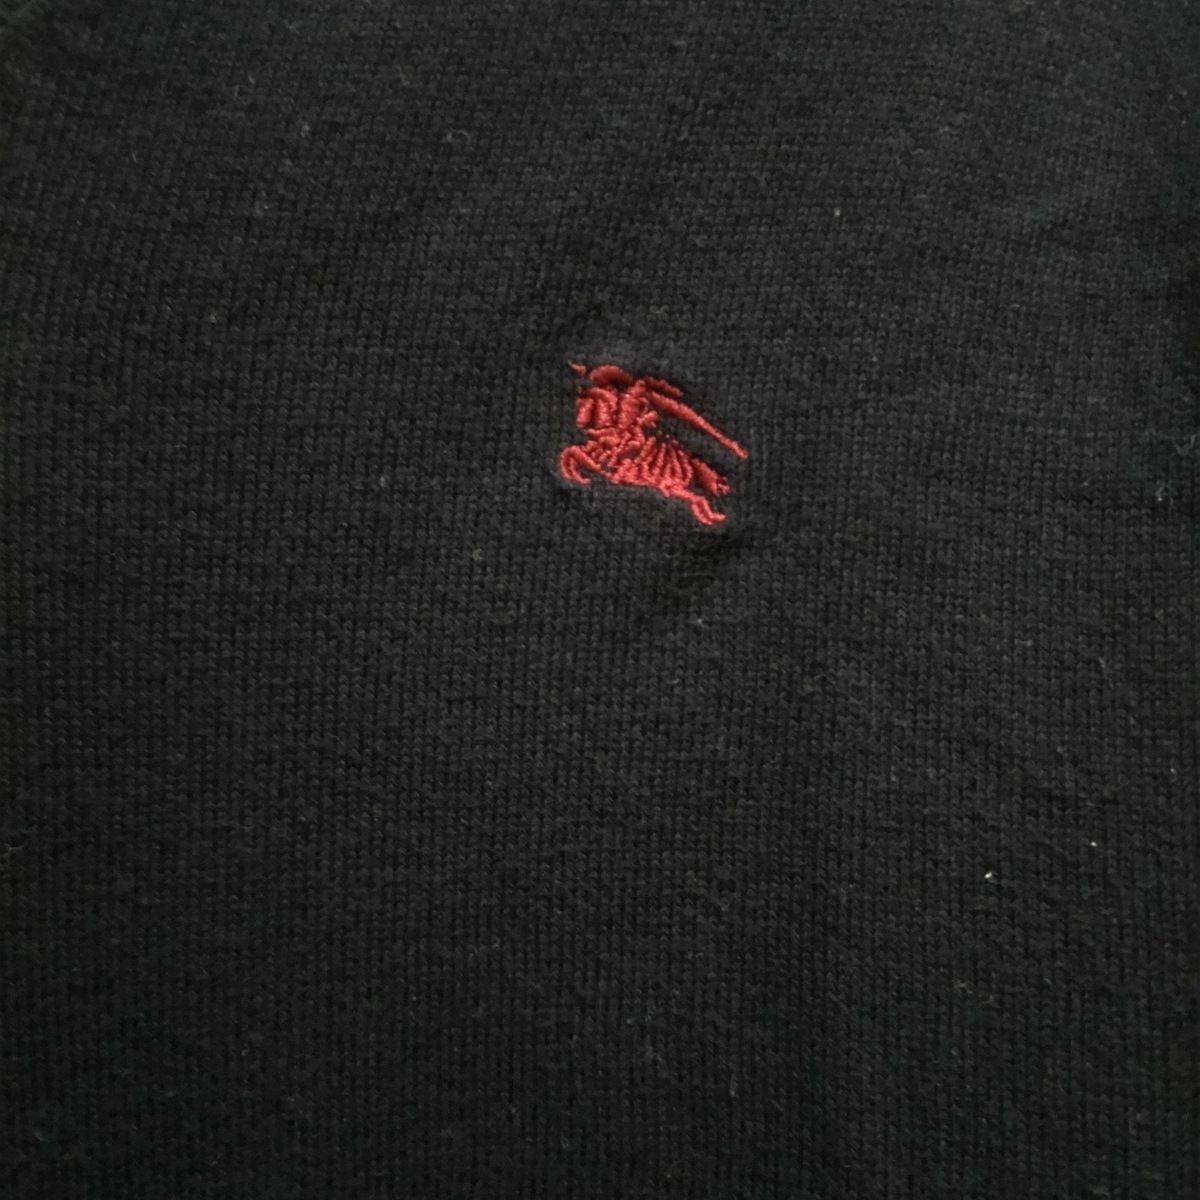 Burberry Black Label(バーバリーブラックレーベル) 長袖セーター サイズ2 M メンズ美品 - ダークネイビー×ボルドー Vネック